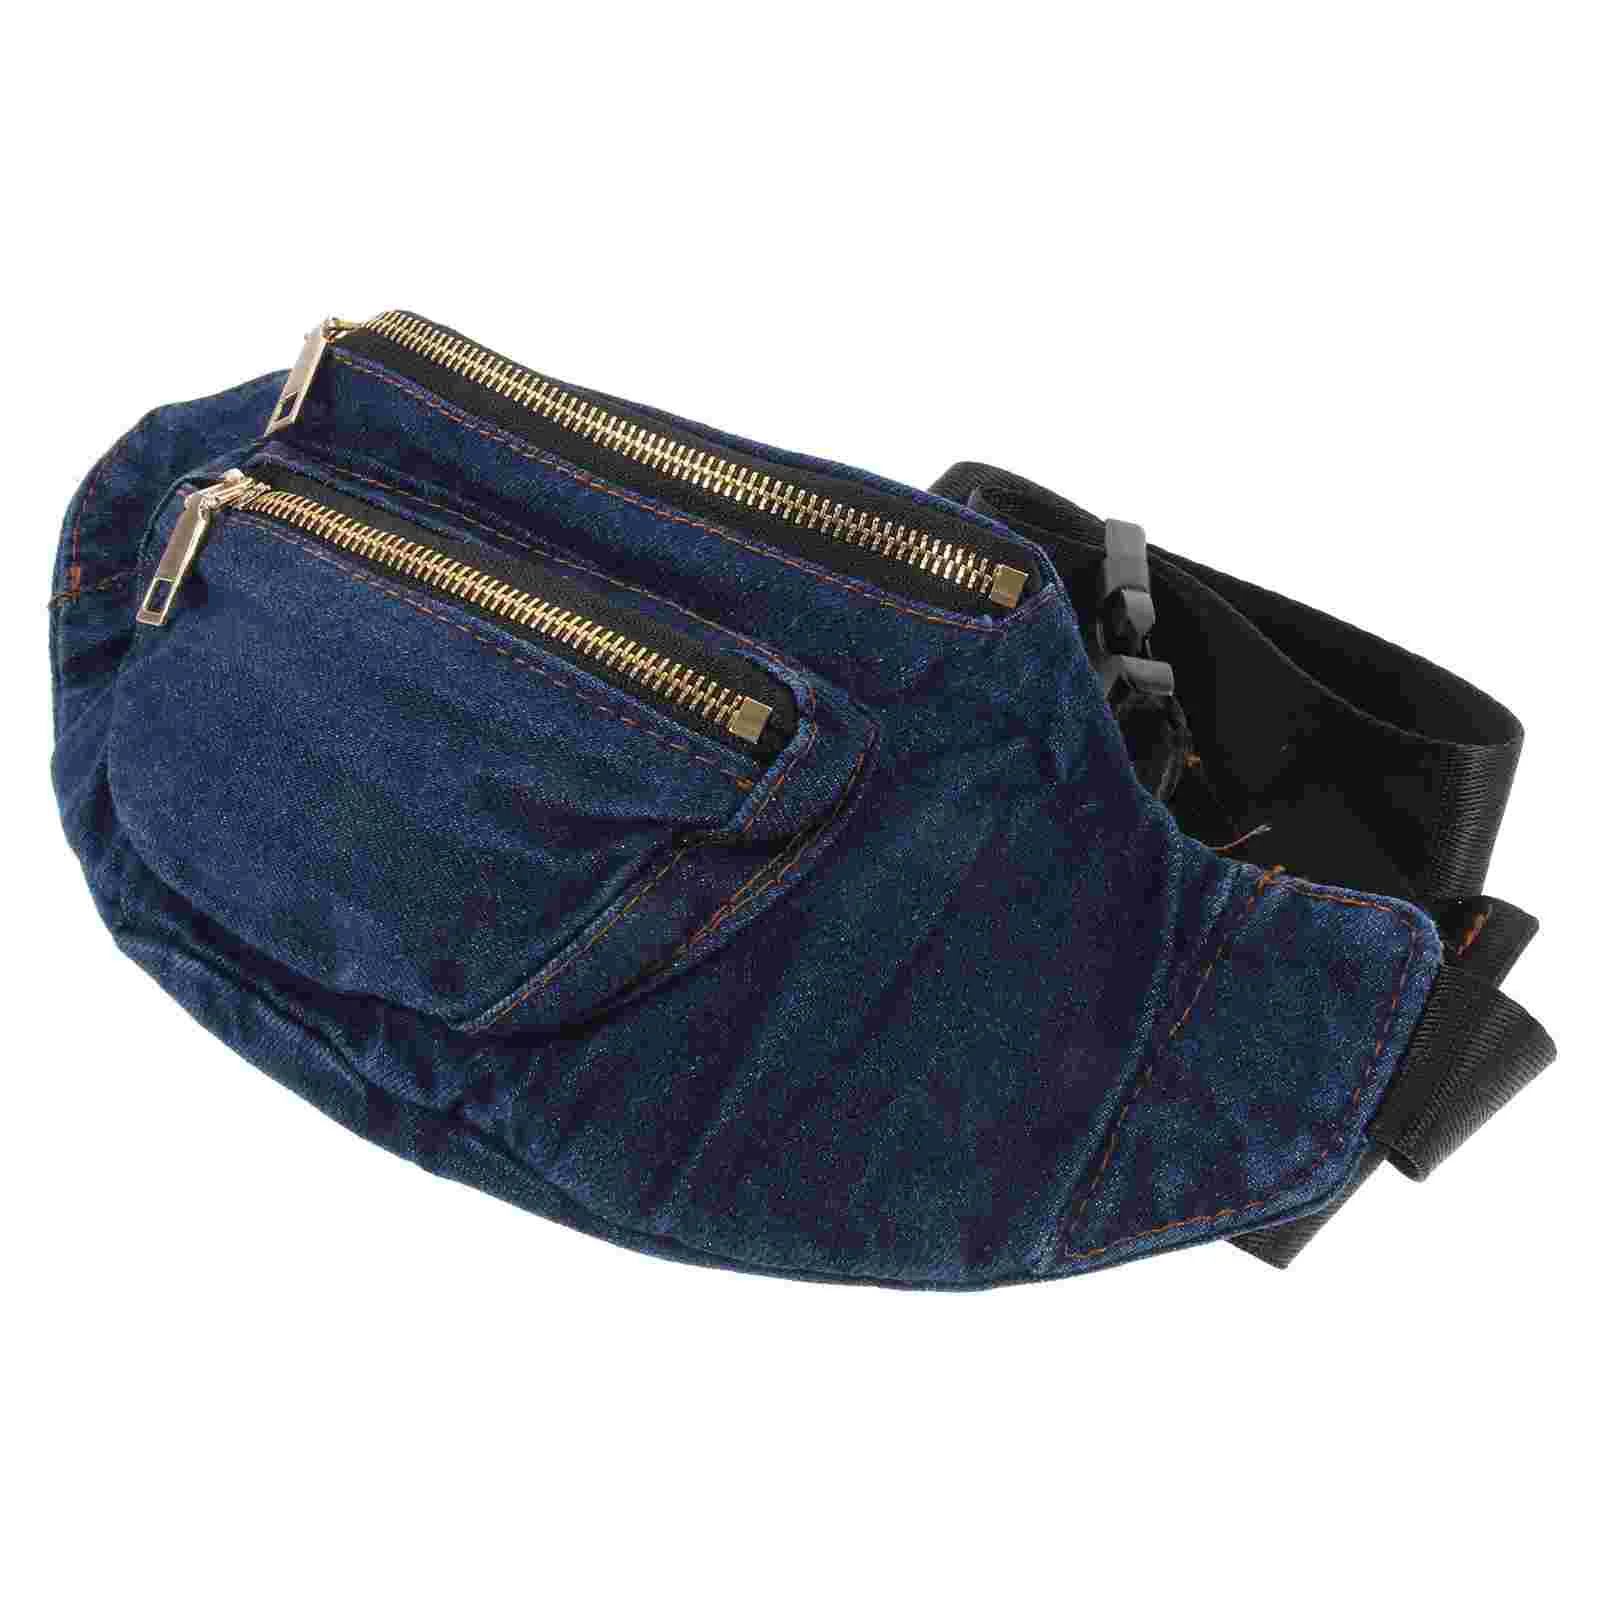 

Lightweight Denim Waist Bag Portable Crossbody Pouch Shoulder Bag Waist Pack Chest Bag for Women (Dark Blue)